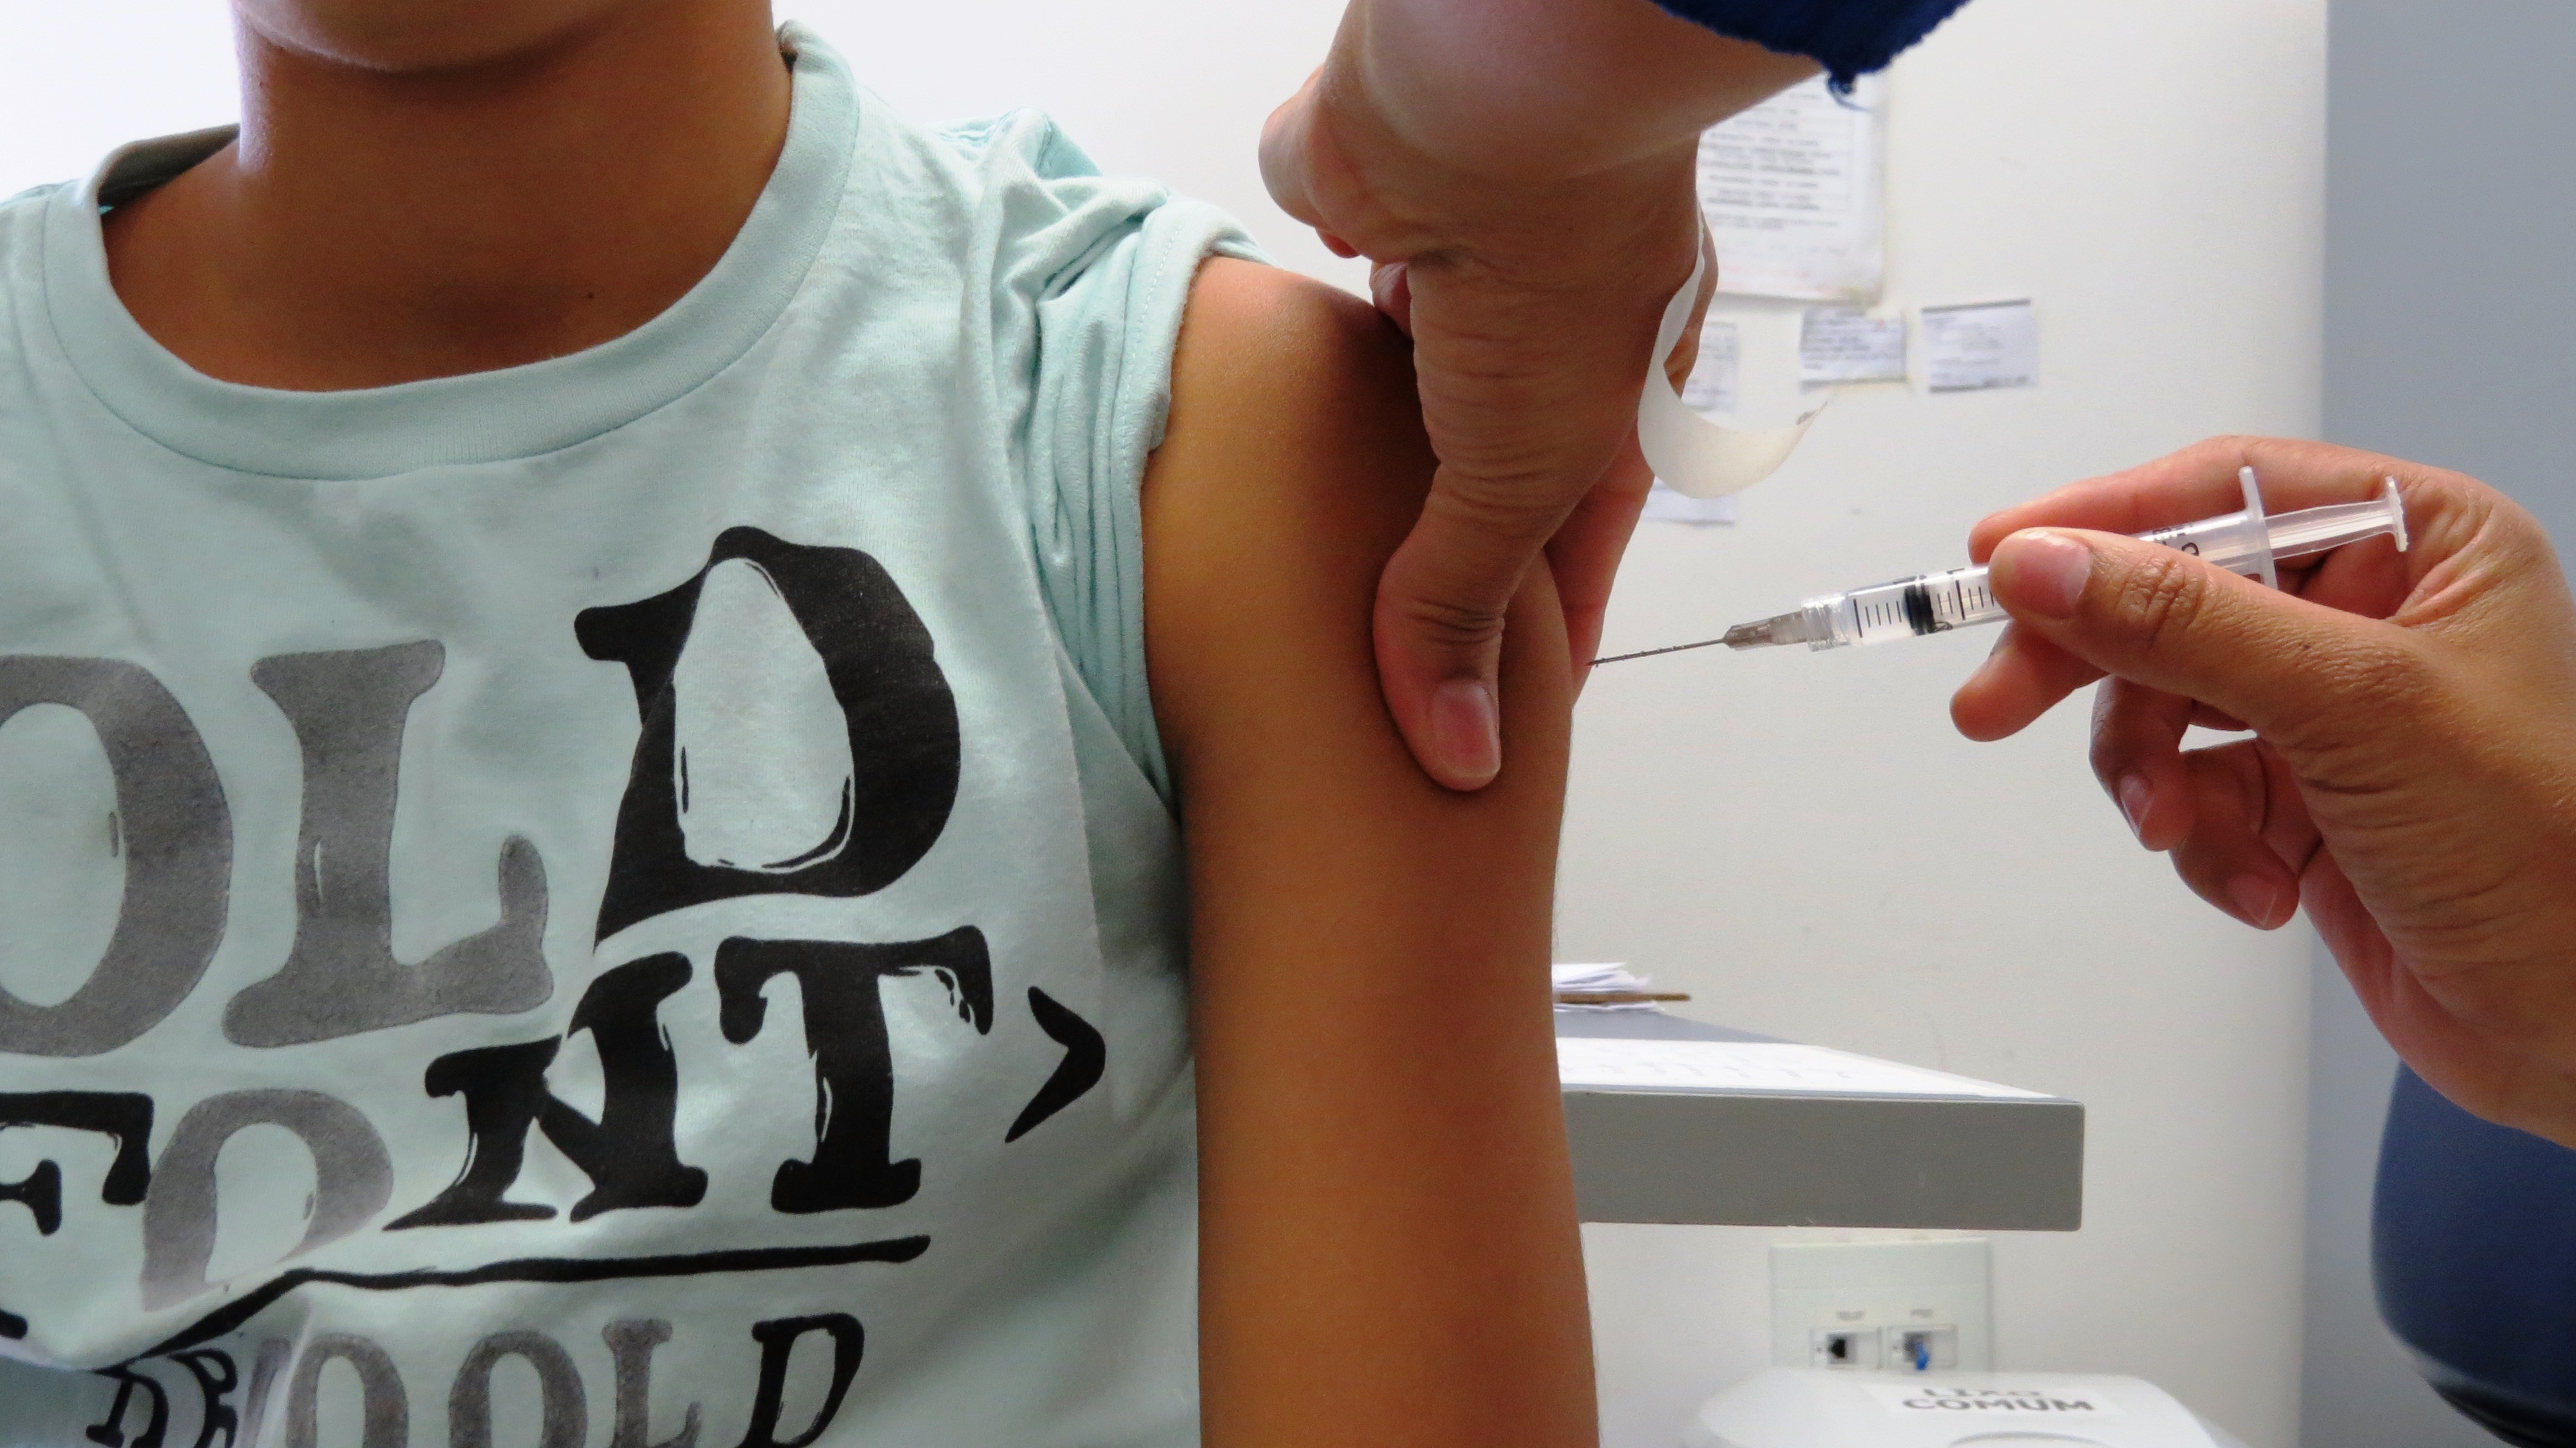 Paraná enfrenta queda na adesão de vacinas contra doenças de fácil contágio, diz Sesa